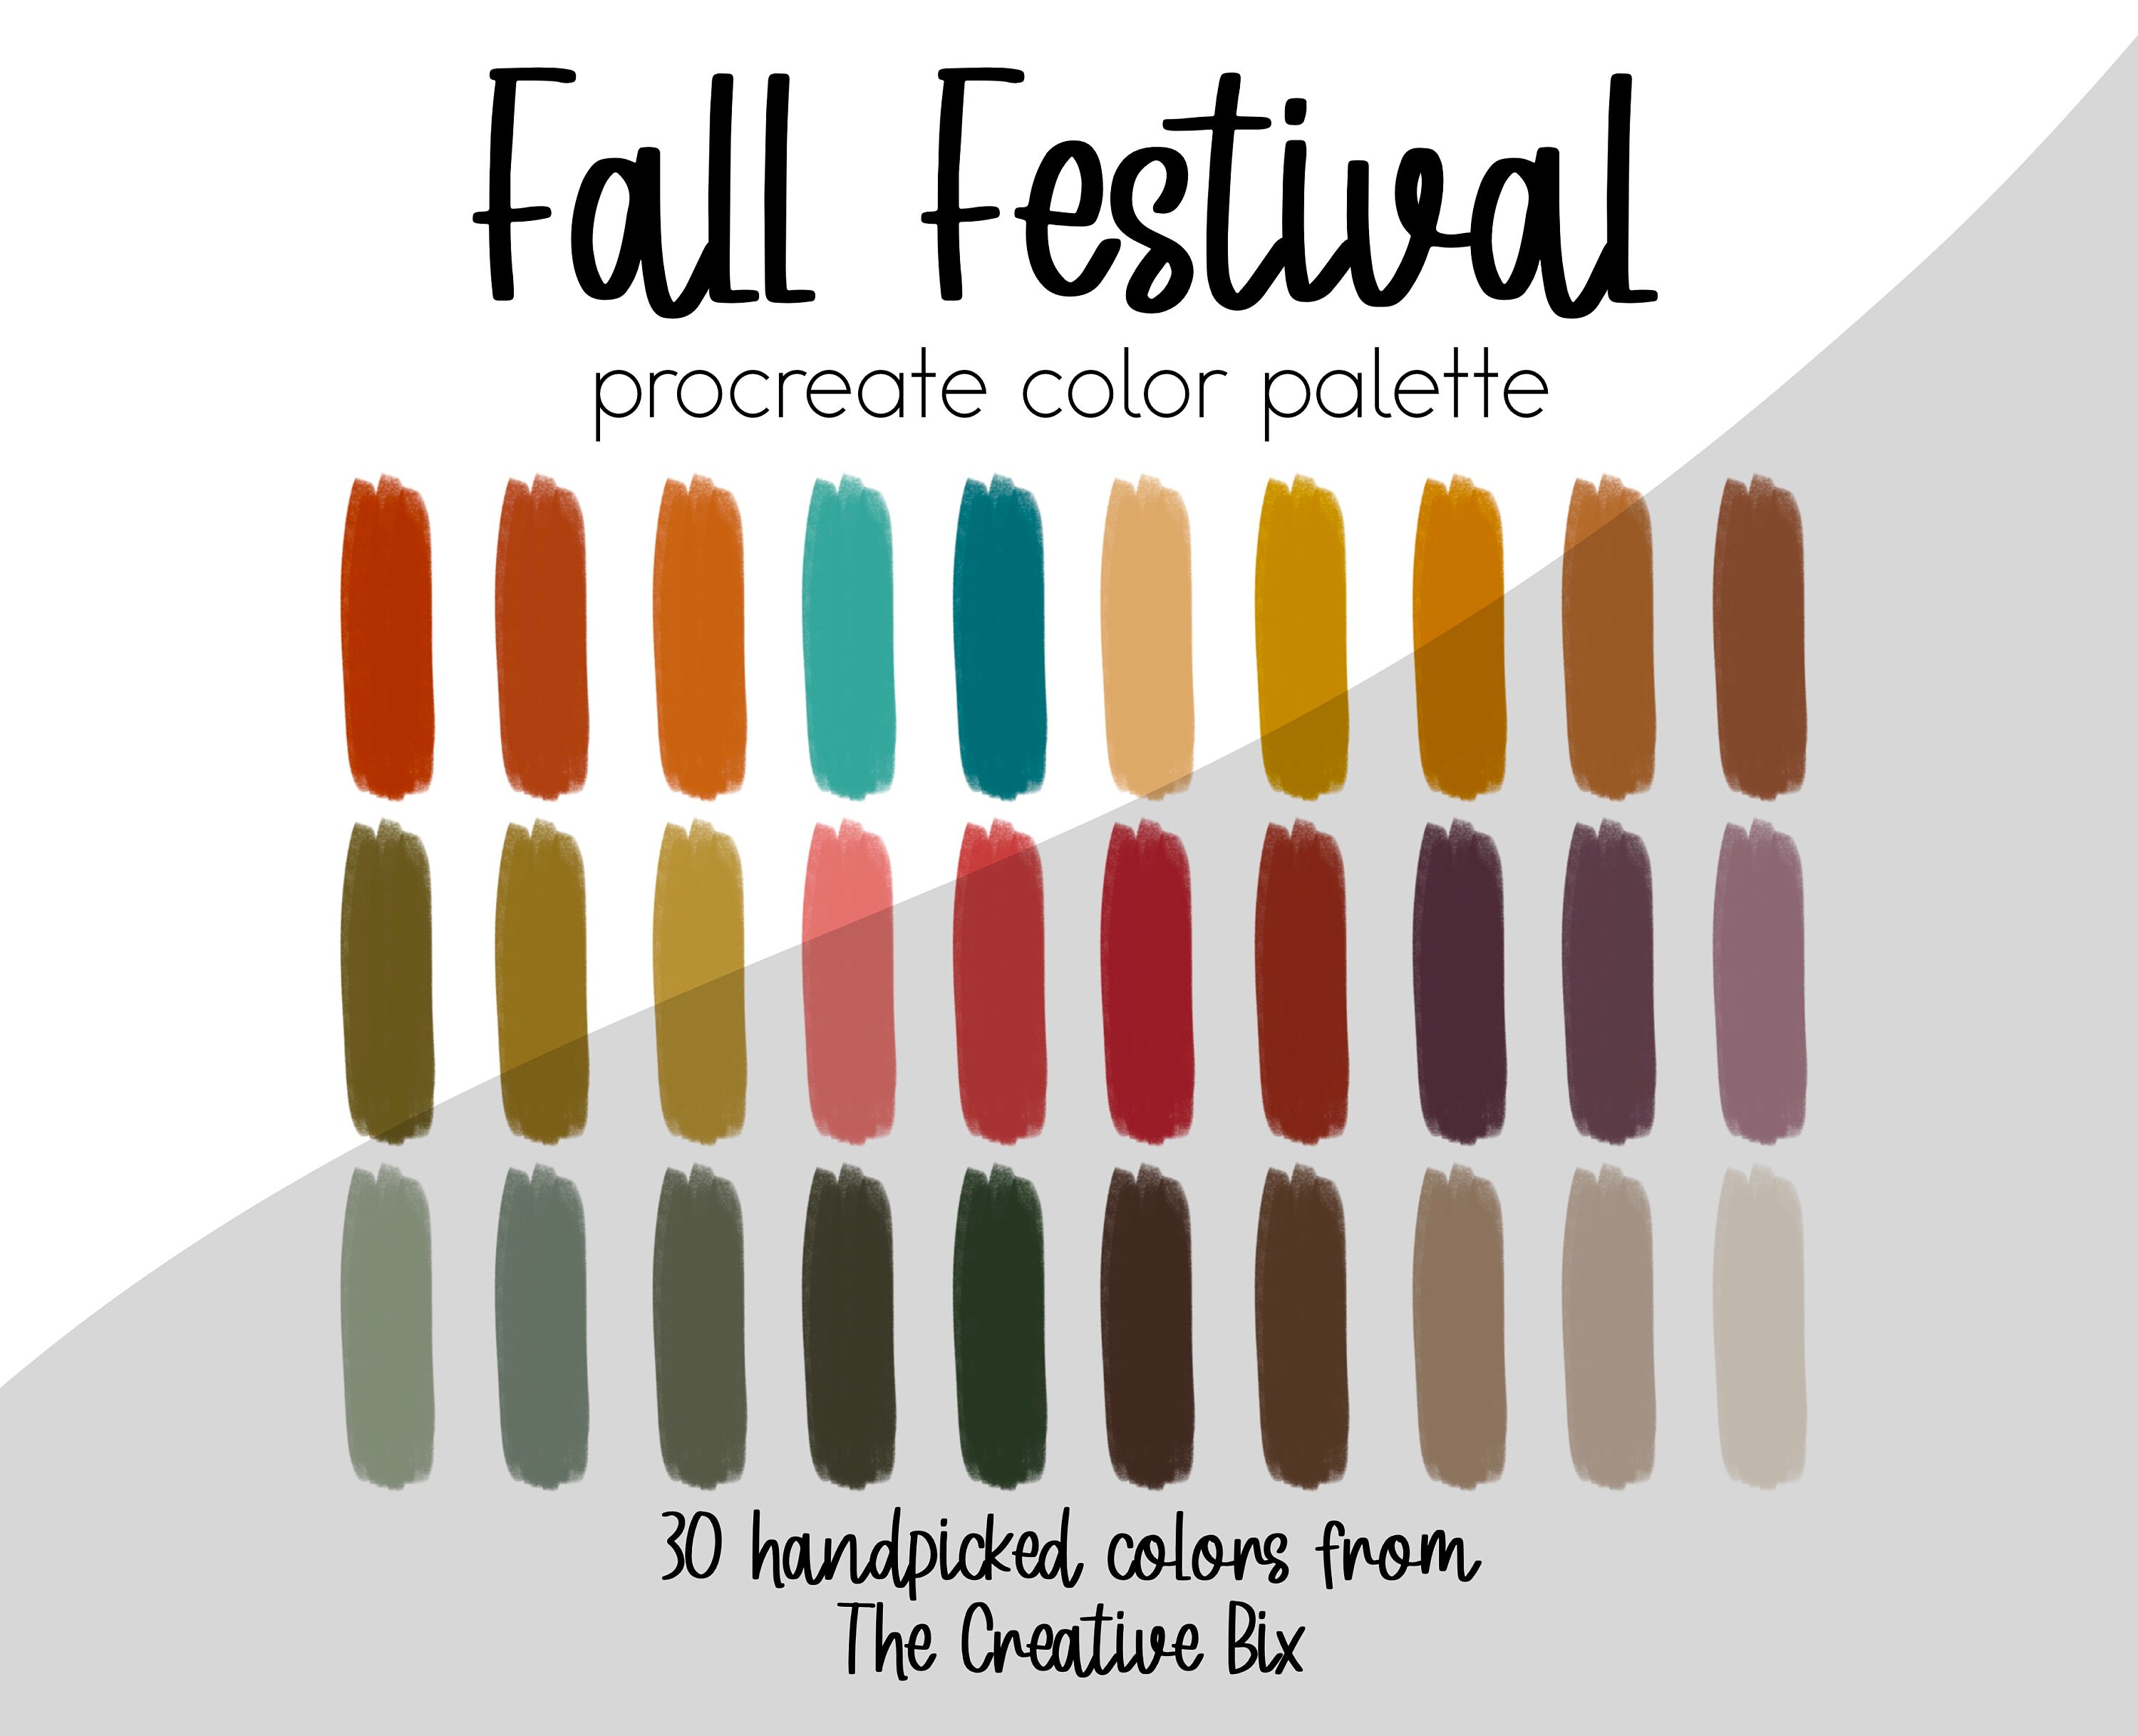 Fall Festival Procreate Palette 30 colors Color Palette | Etsy